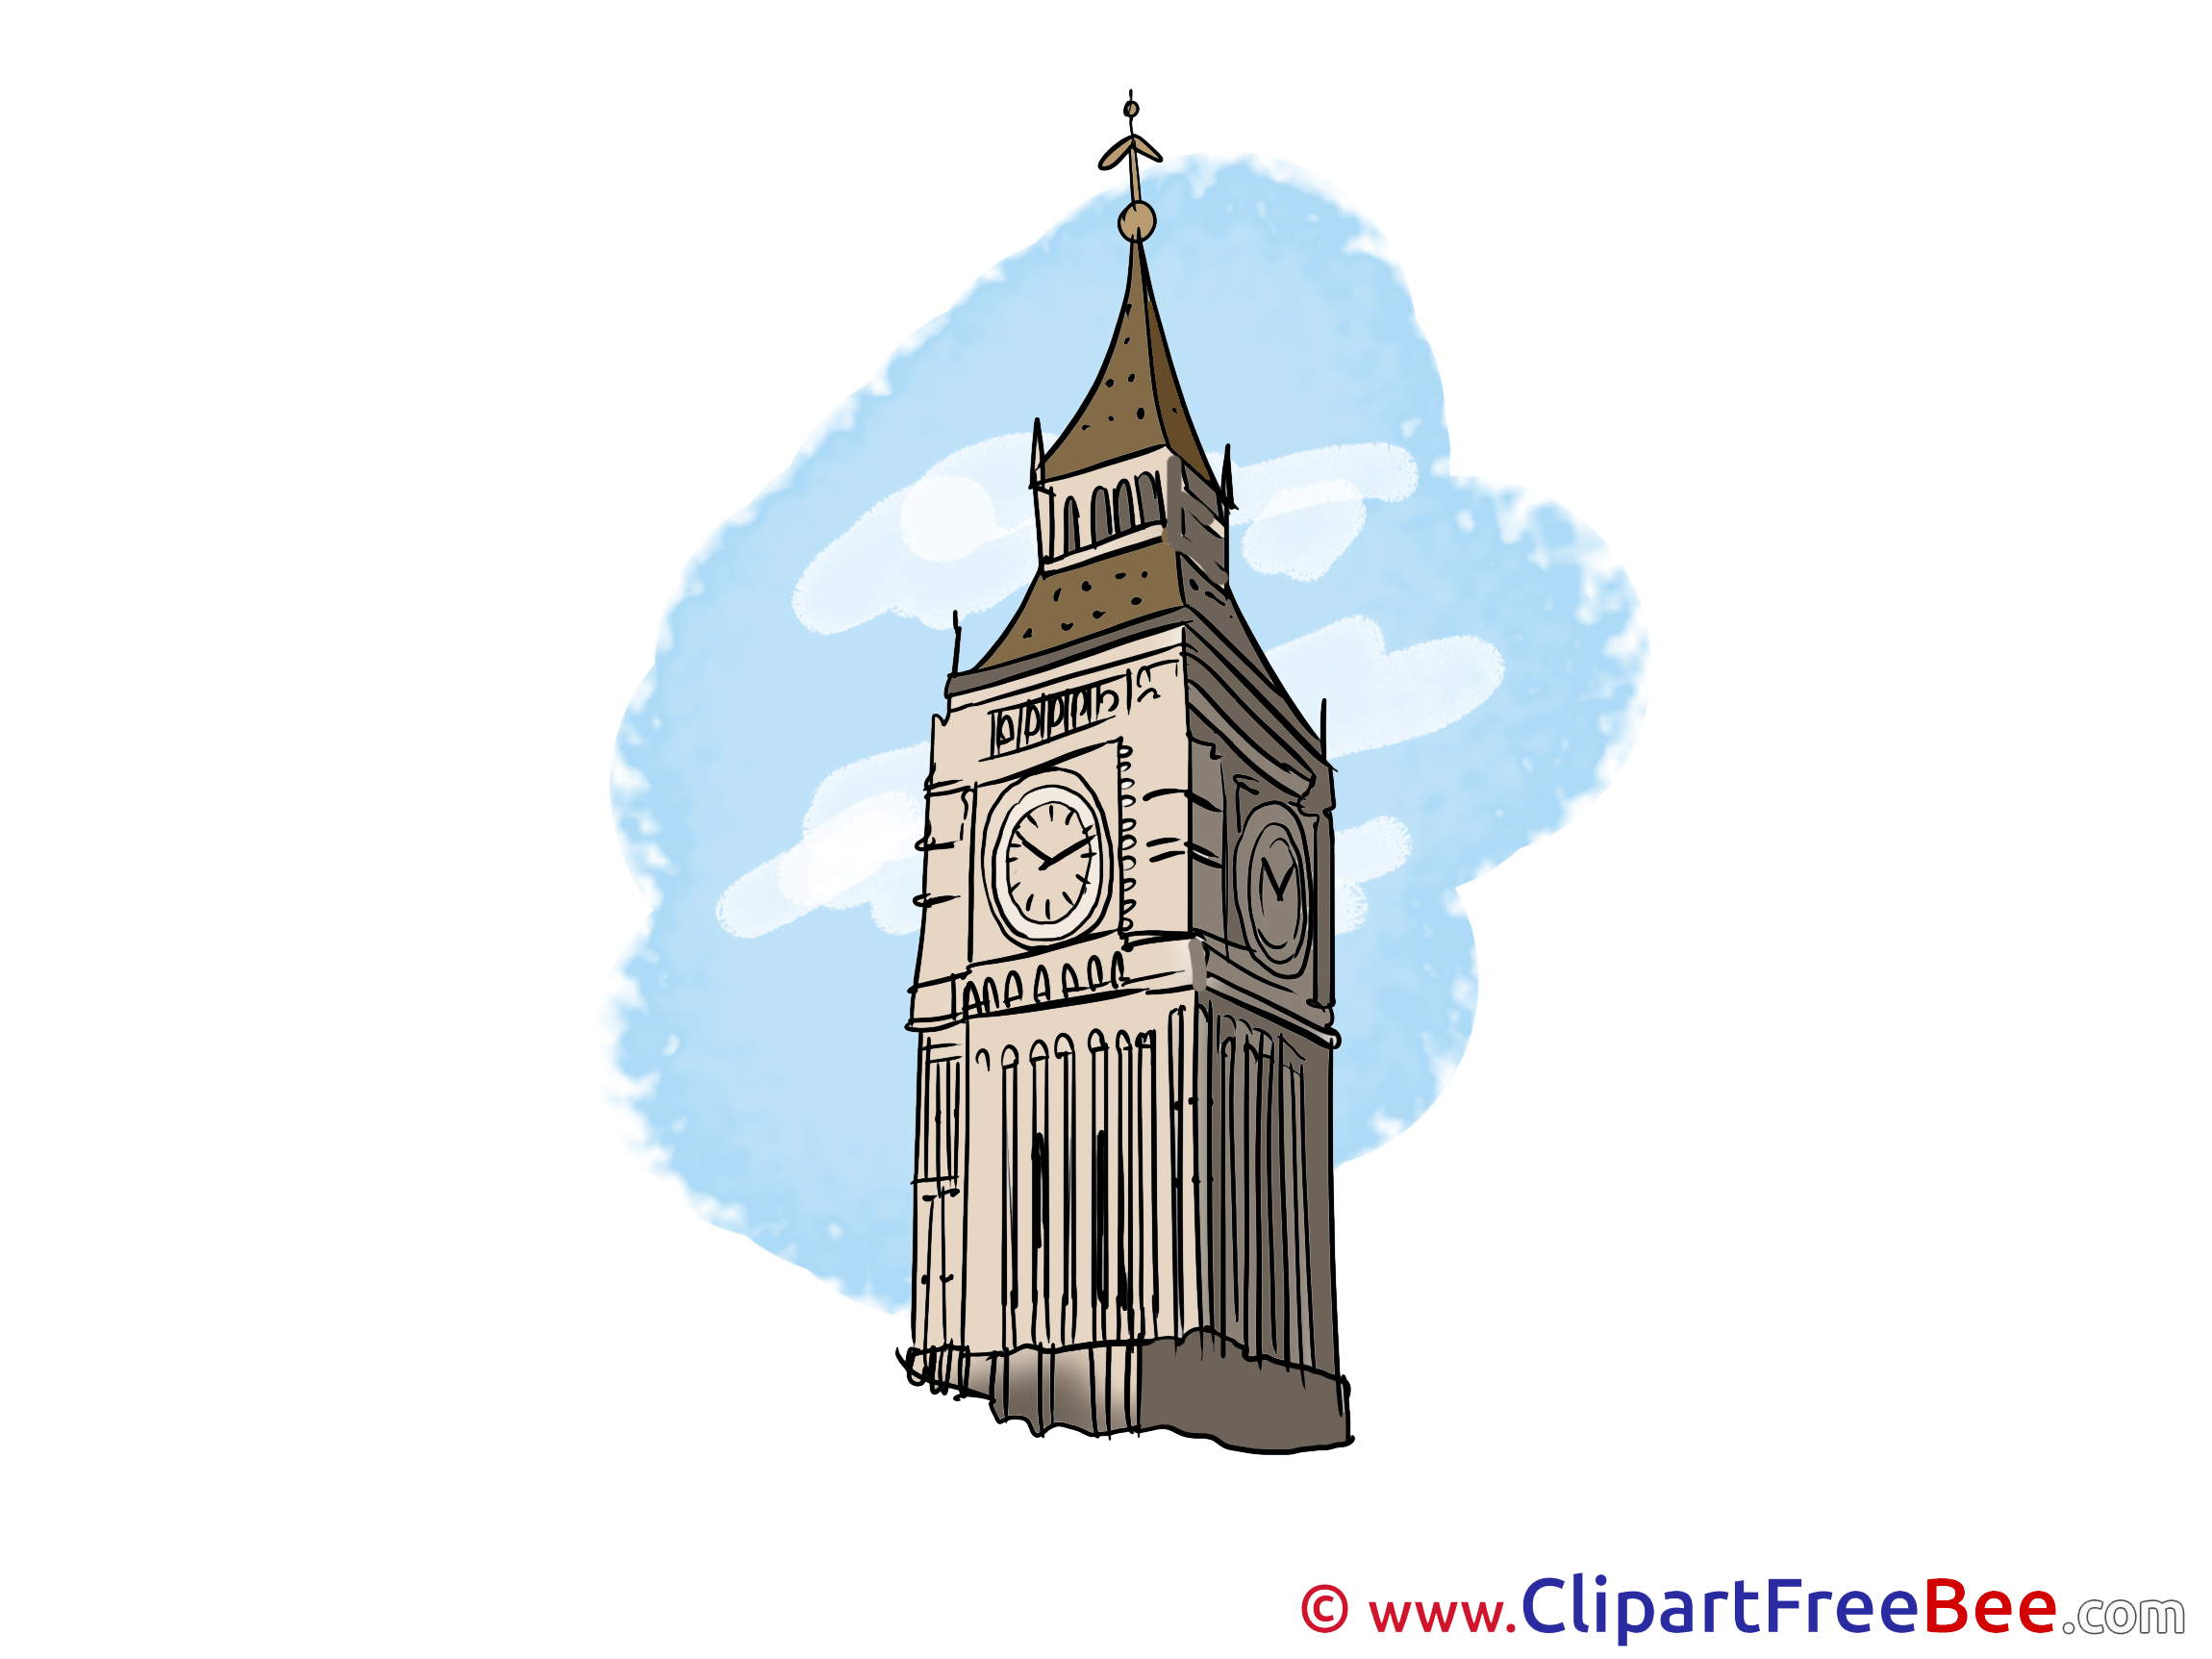 Big ben art. Биг Бен в Лондоне. Биг-Бен Лондон арт. Достопримечательности Англии часы Биг Бен. Биг Бен башня символ.